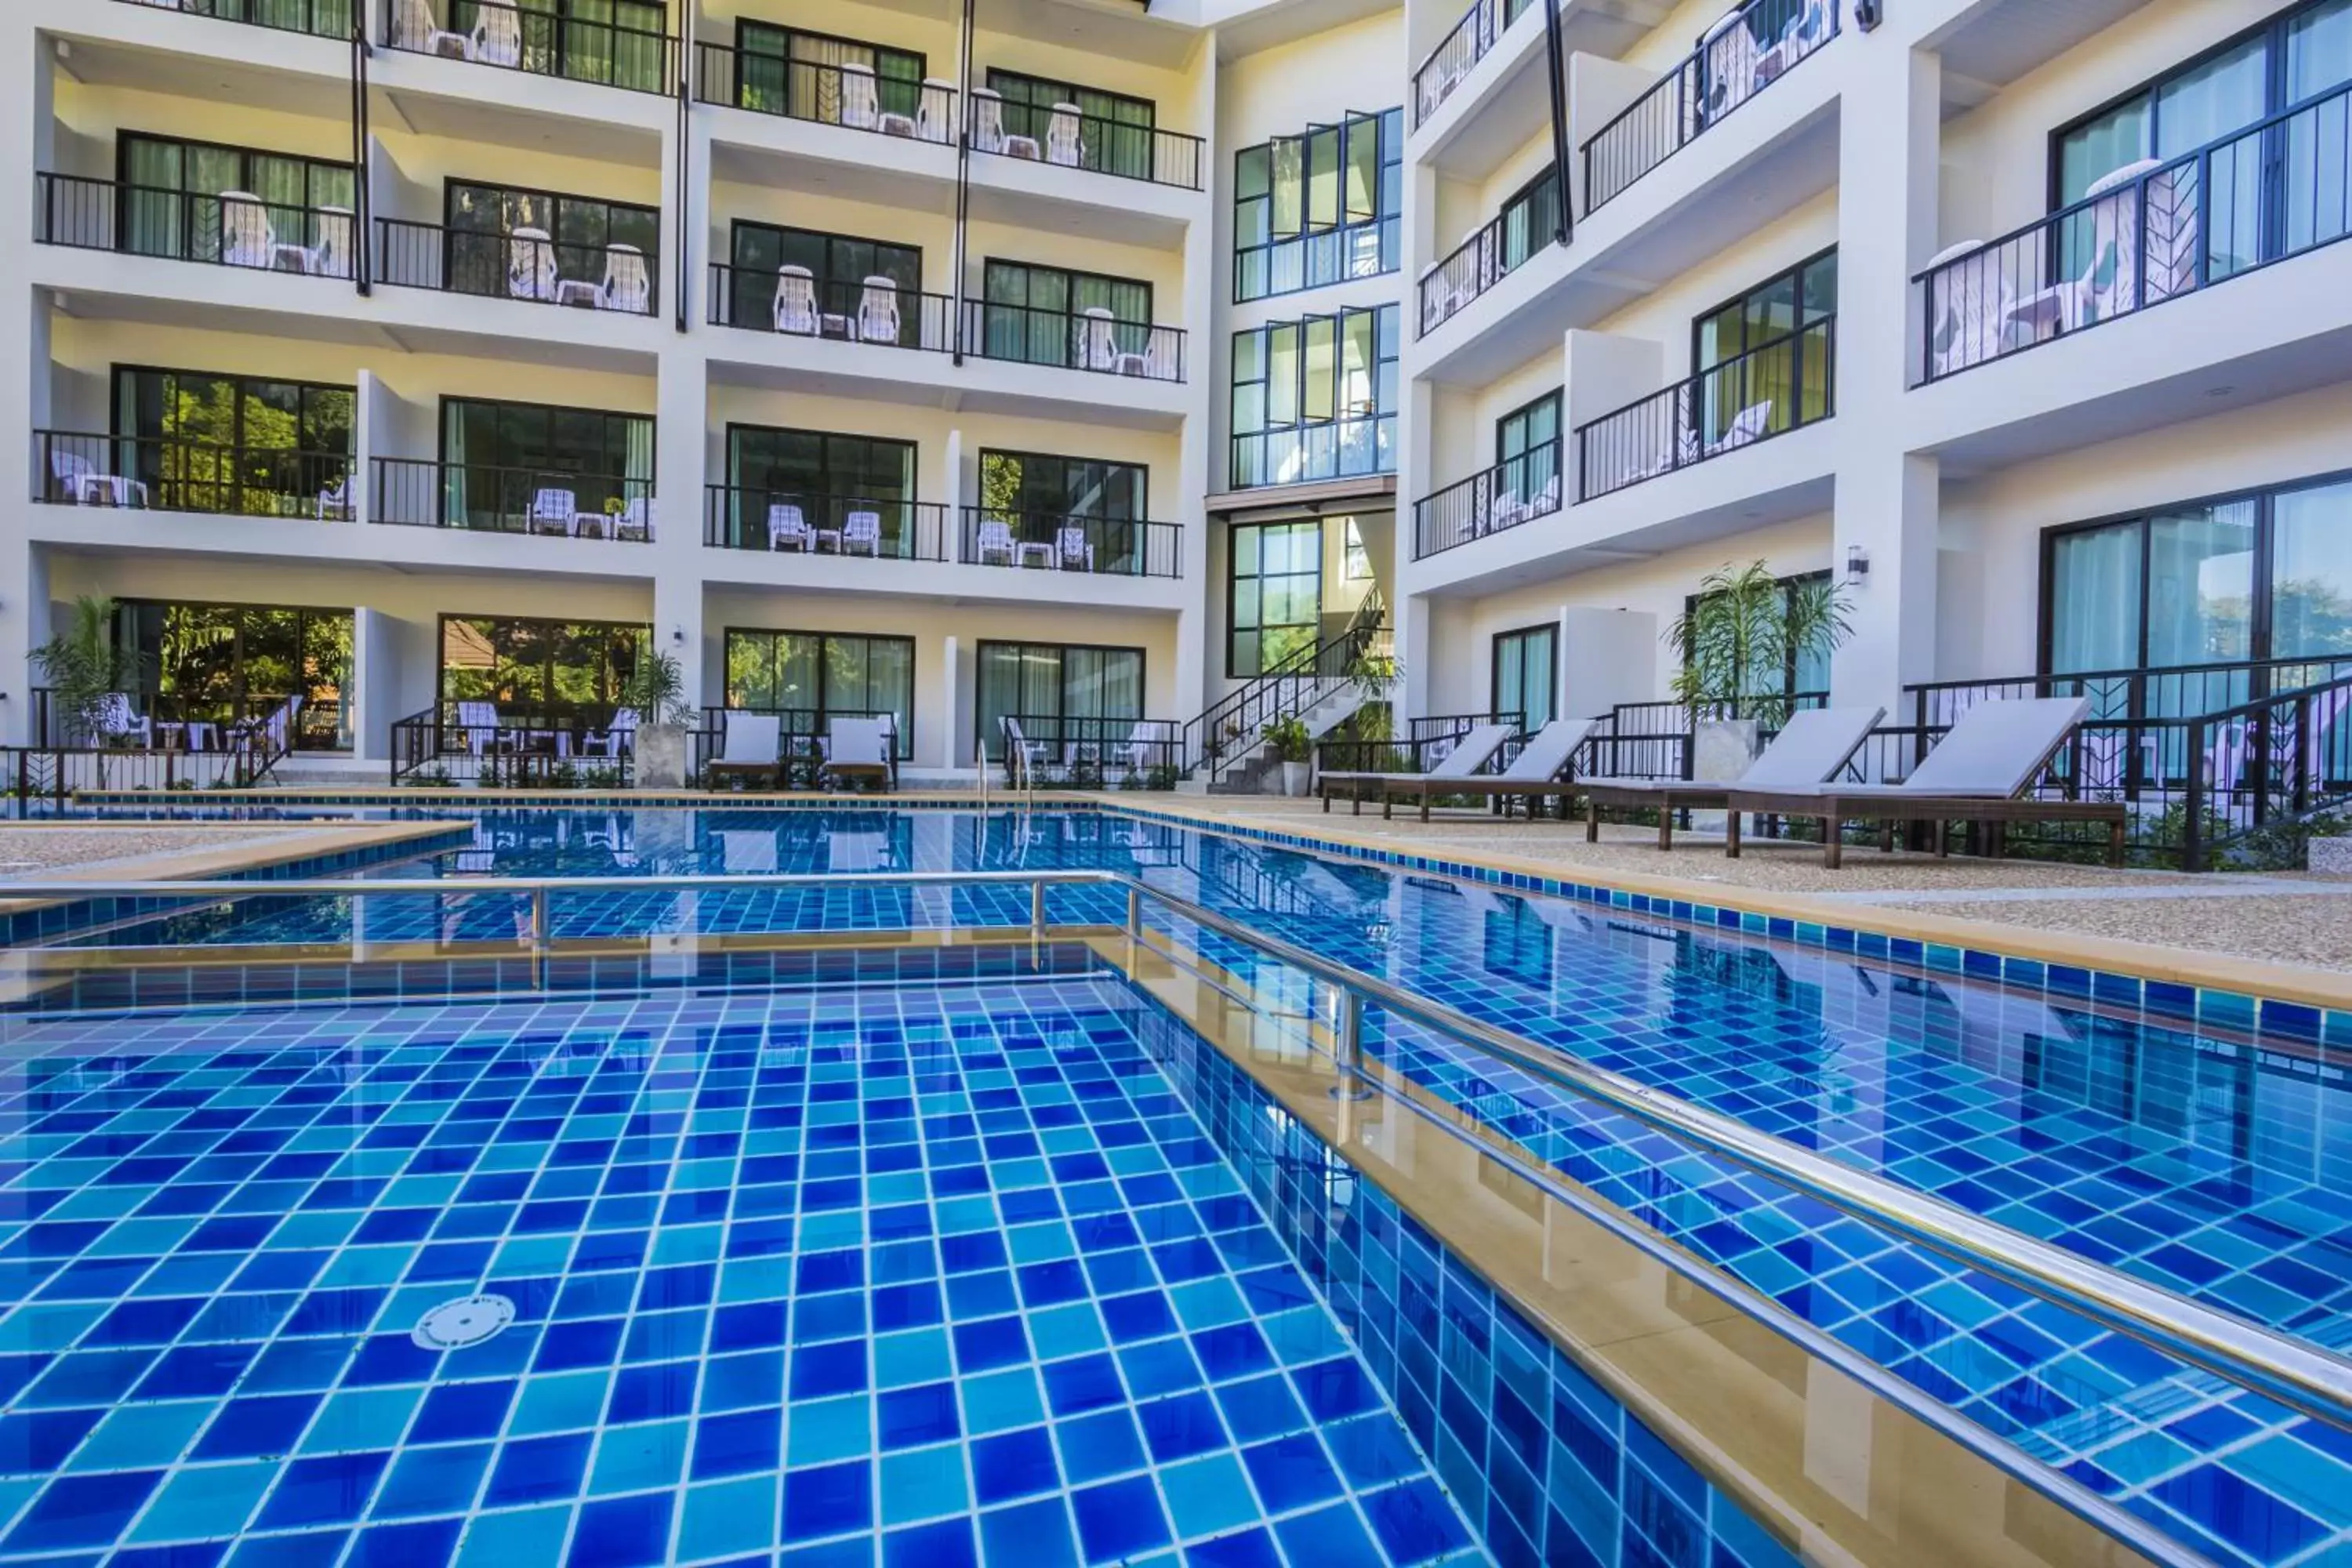 Property building, Swimming Pool in Andaman Pearl Resort